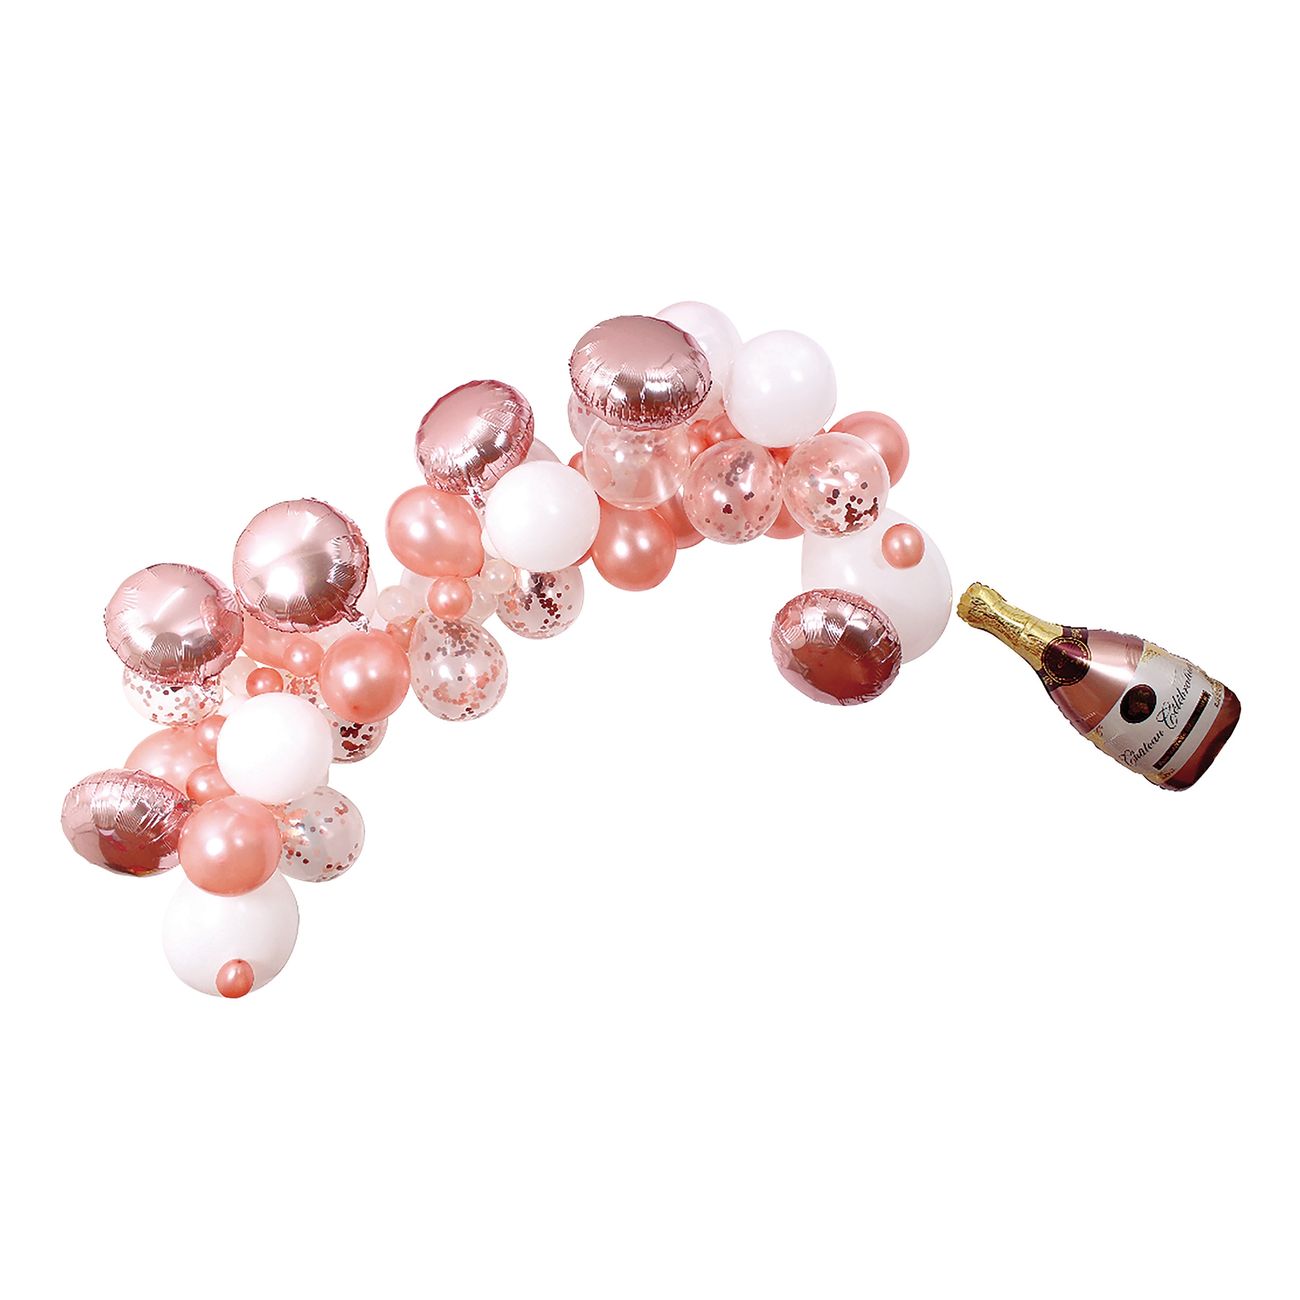 ballongbukett-med-rosa-champagneflaska-90319-1